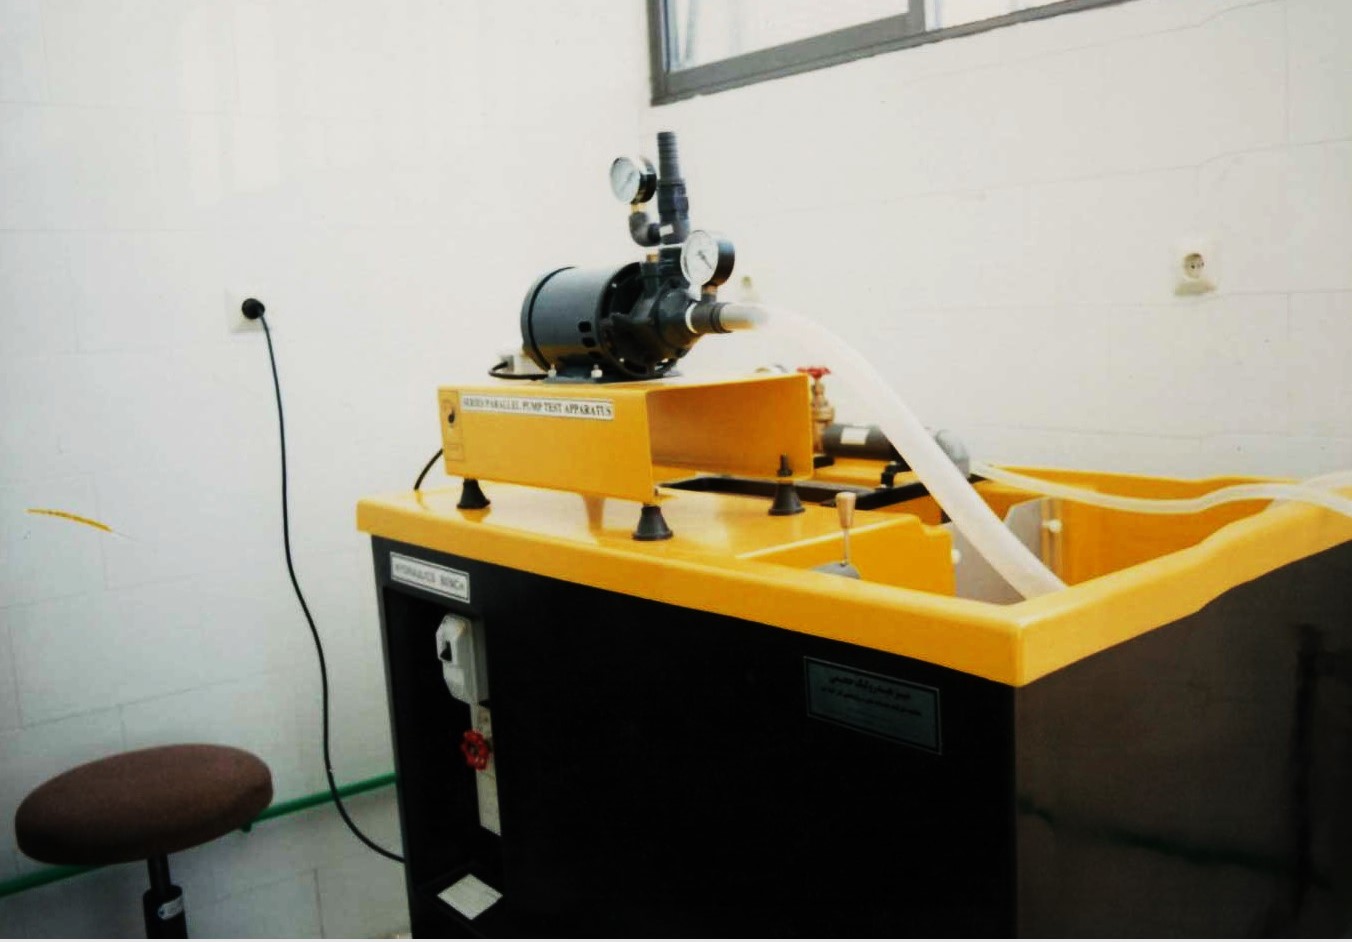 دستگاه آزمایش پمپهای سری و موازی با دور ثابت با ست تخلیه